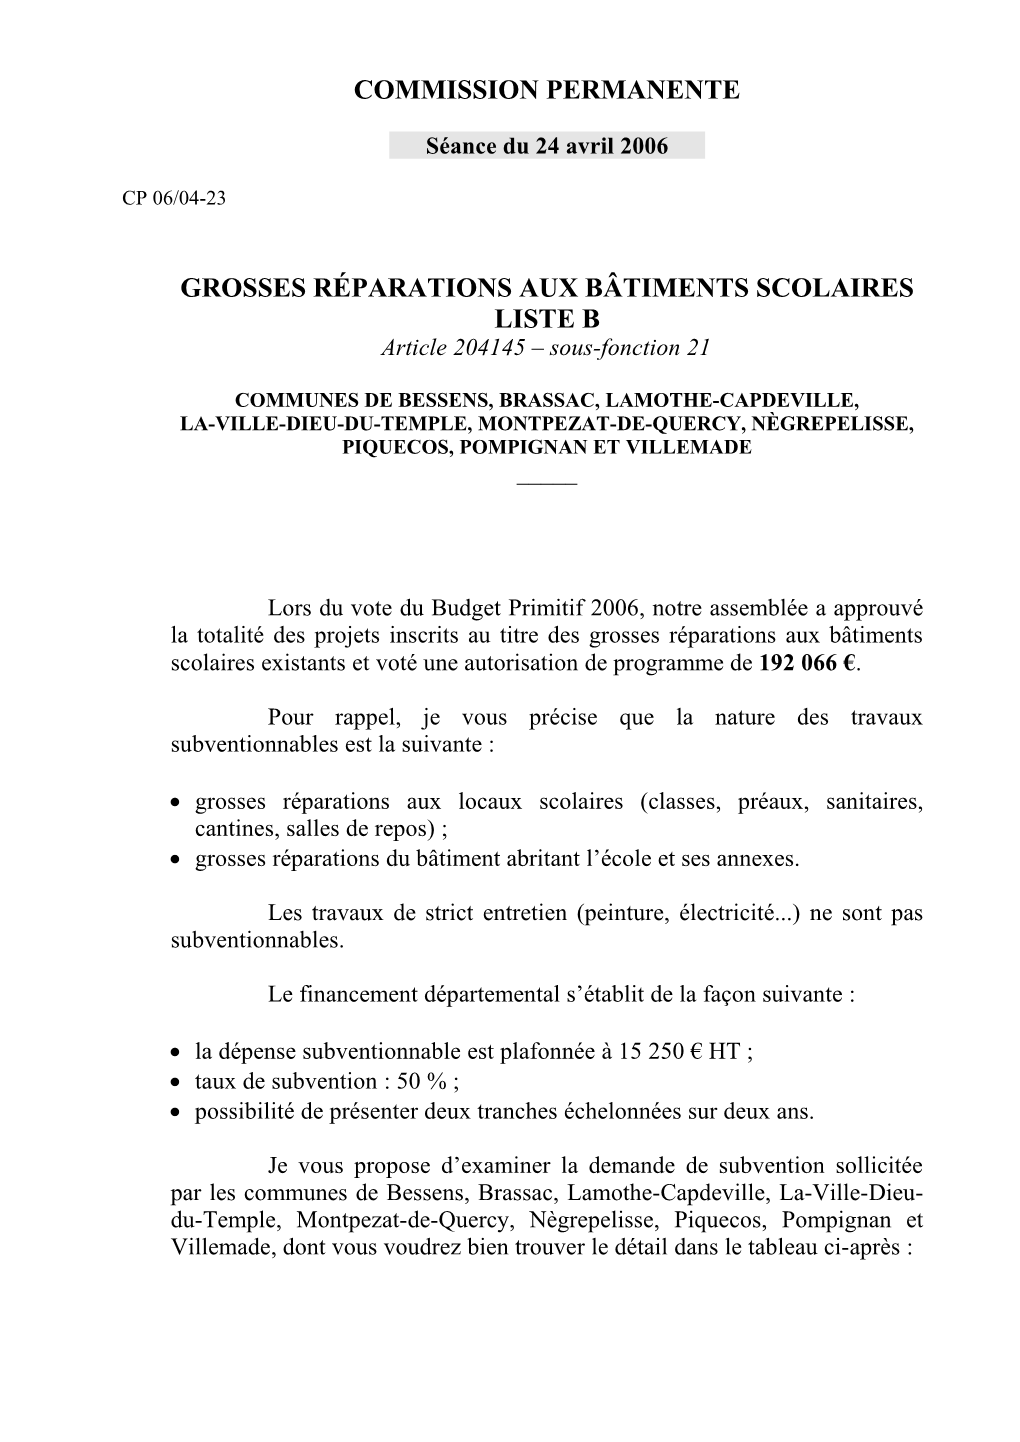 Commission Permanente Grosses Réparations Aux